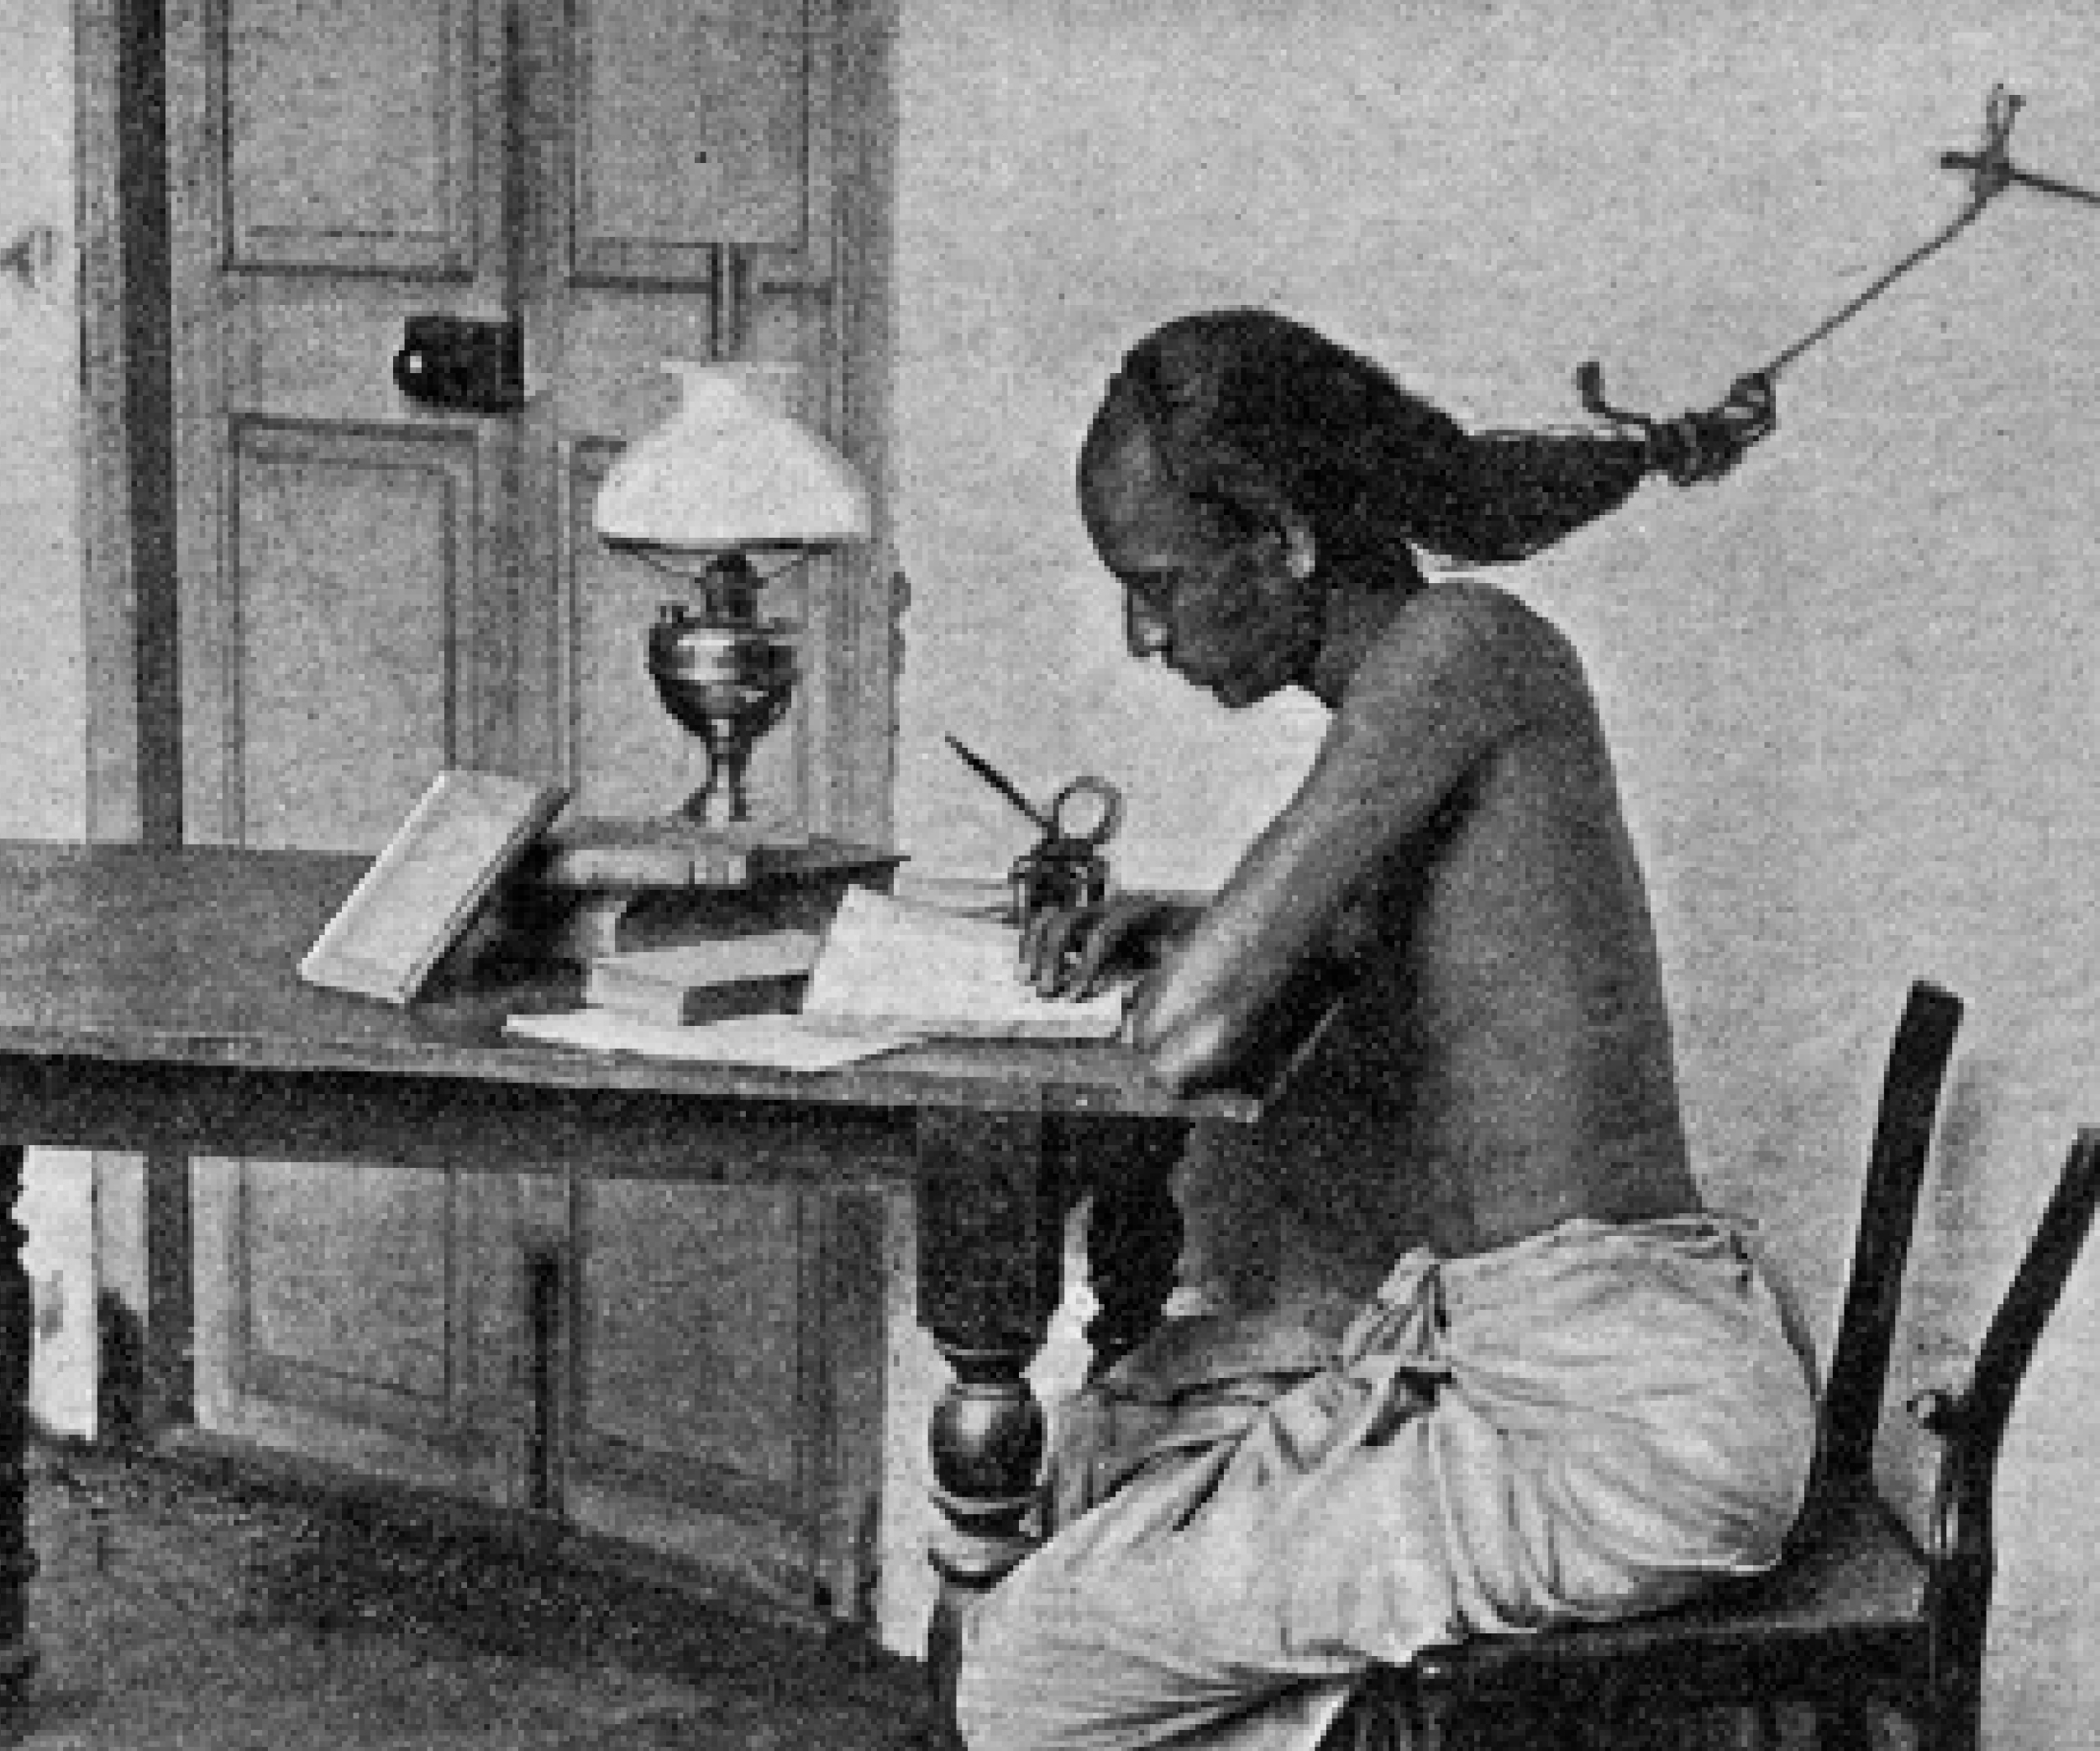 বাংলায় ব্রিটিশ শিক্ষা-তৎপরতা এবং ঈশ্বরচন্দ্র বিদ্যাসাগরের অবদান